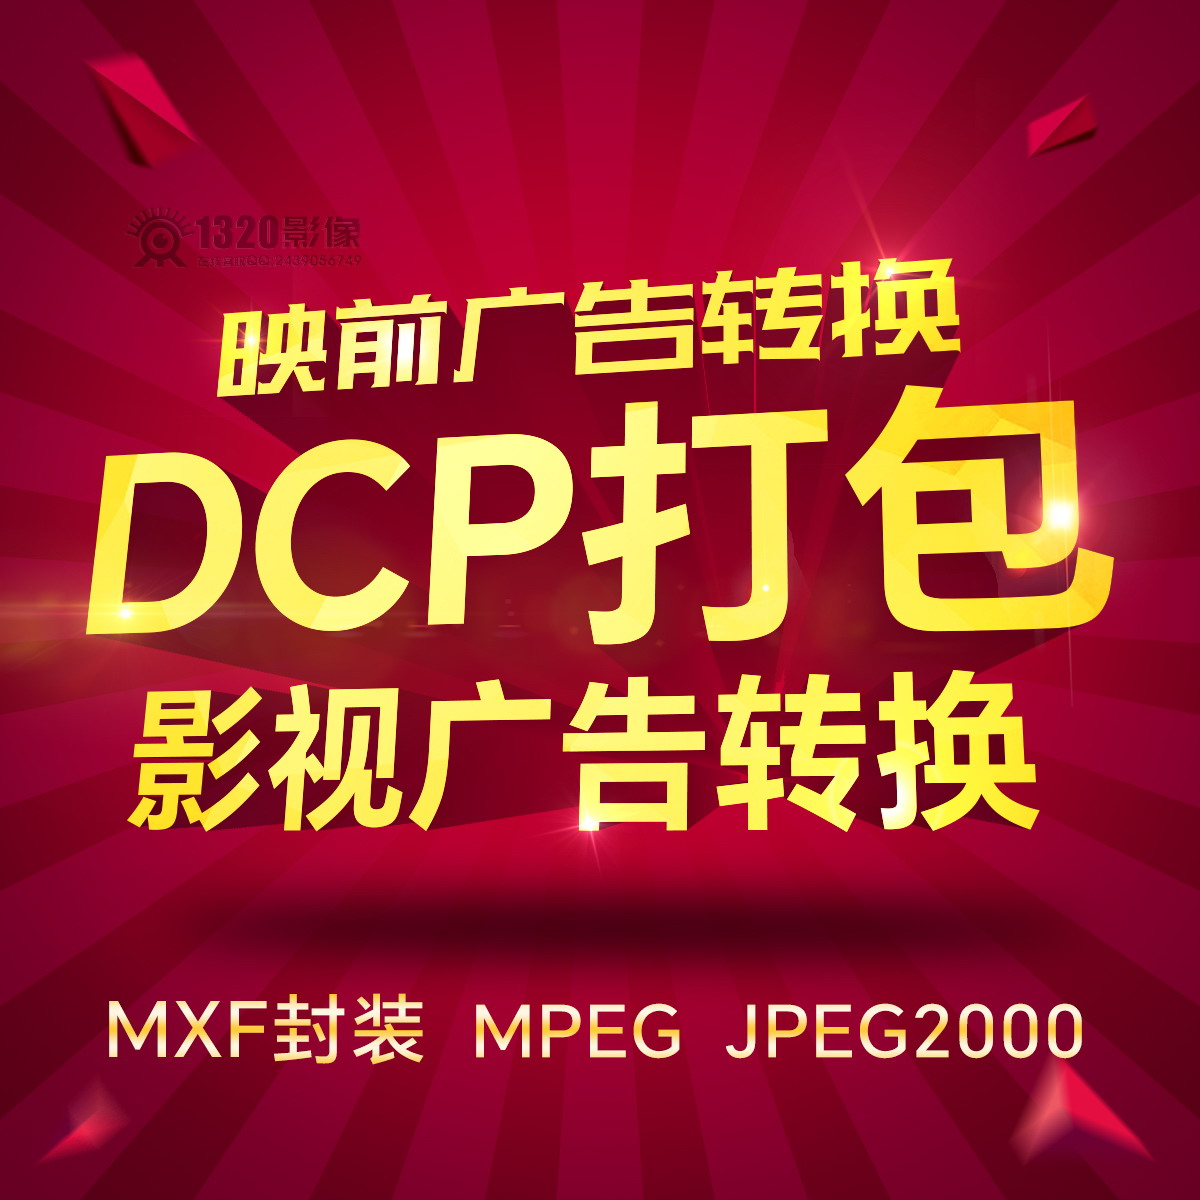 电影格式转换 DCP打包 影院映前贴片广告MXF封装制作转制JPEG2000